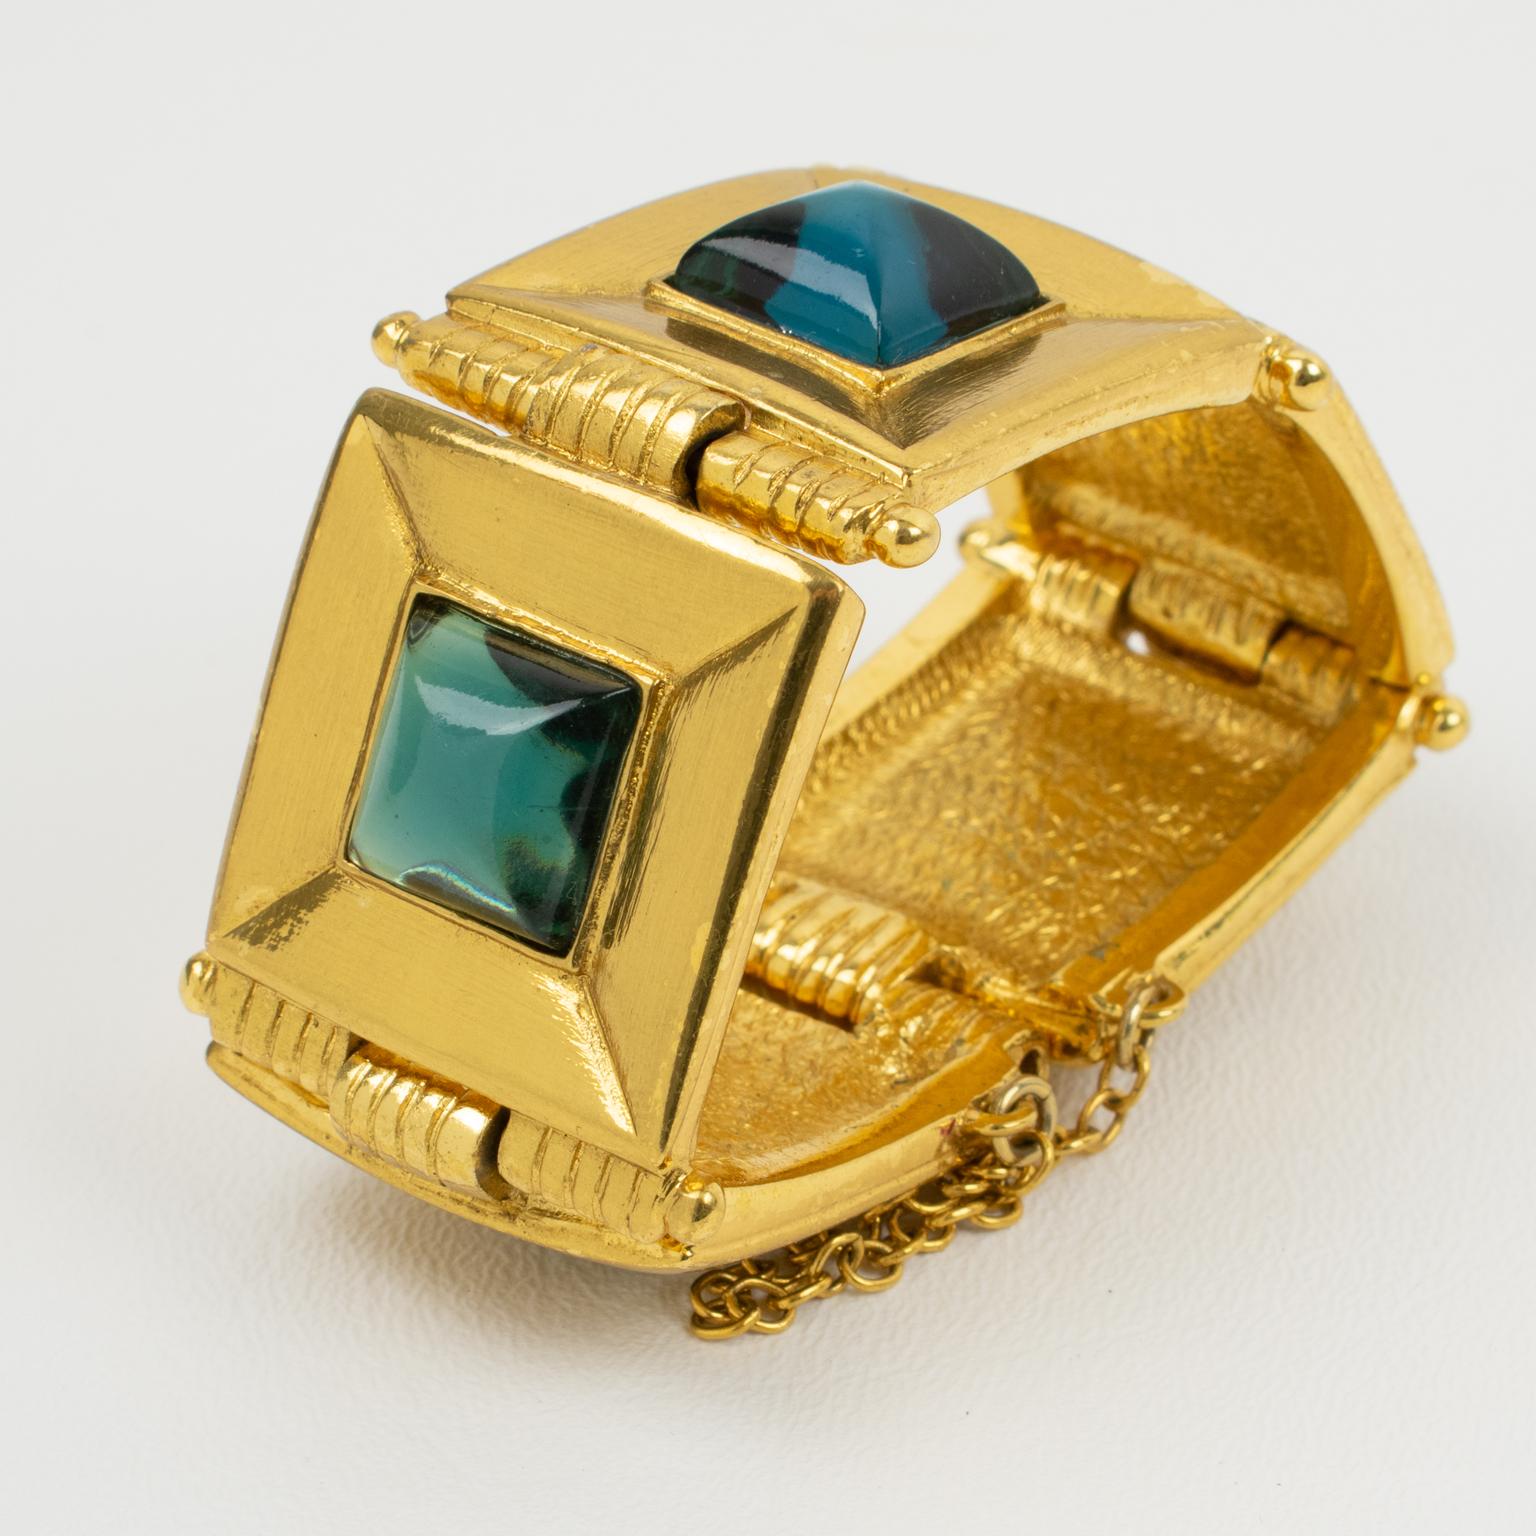 Modern Jean Louis Scherrer Gilt Metal Jeweled Link Bracelet Turquoise Resin Cabochon For Sale